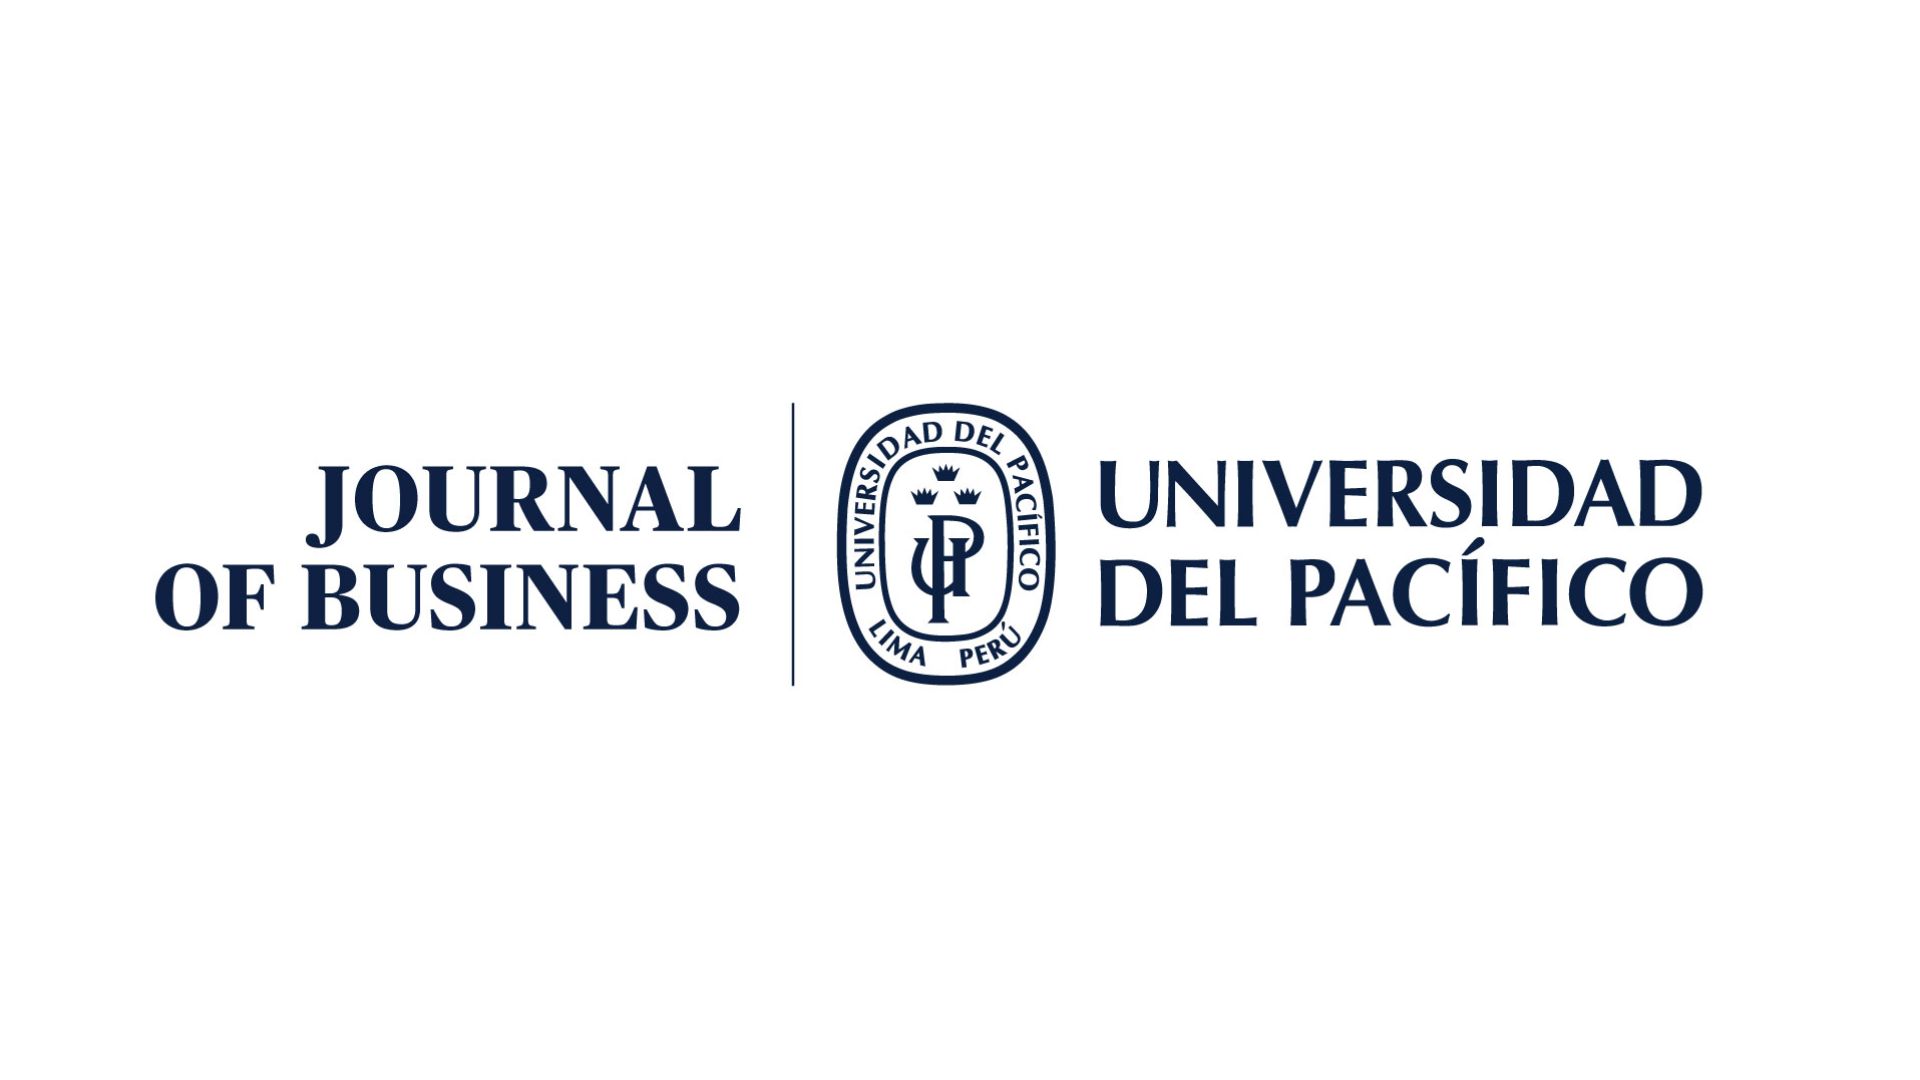 Convocatoria para publicar en el Journal of Business de la Universidad del Pacifico